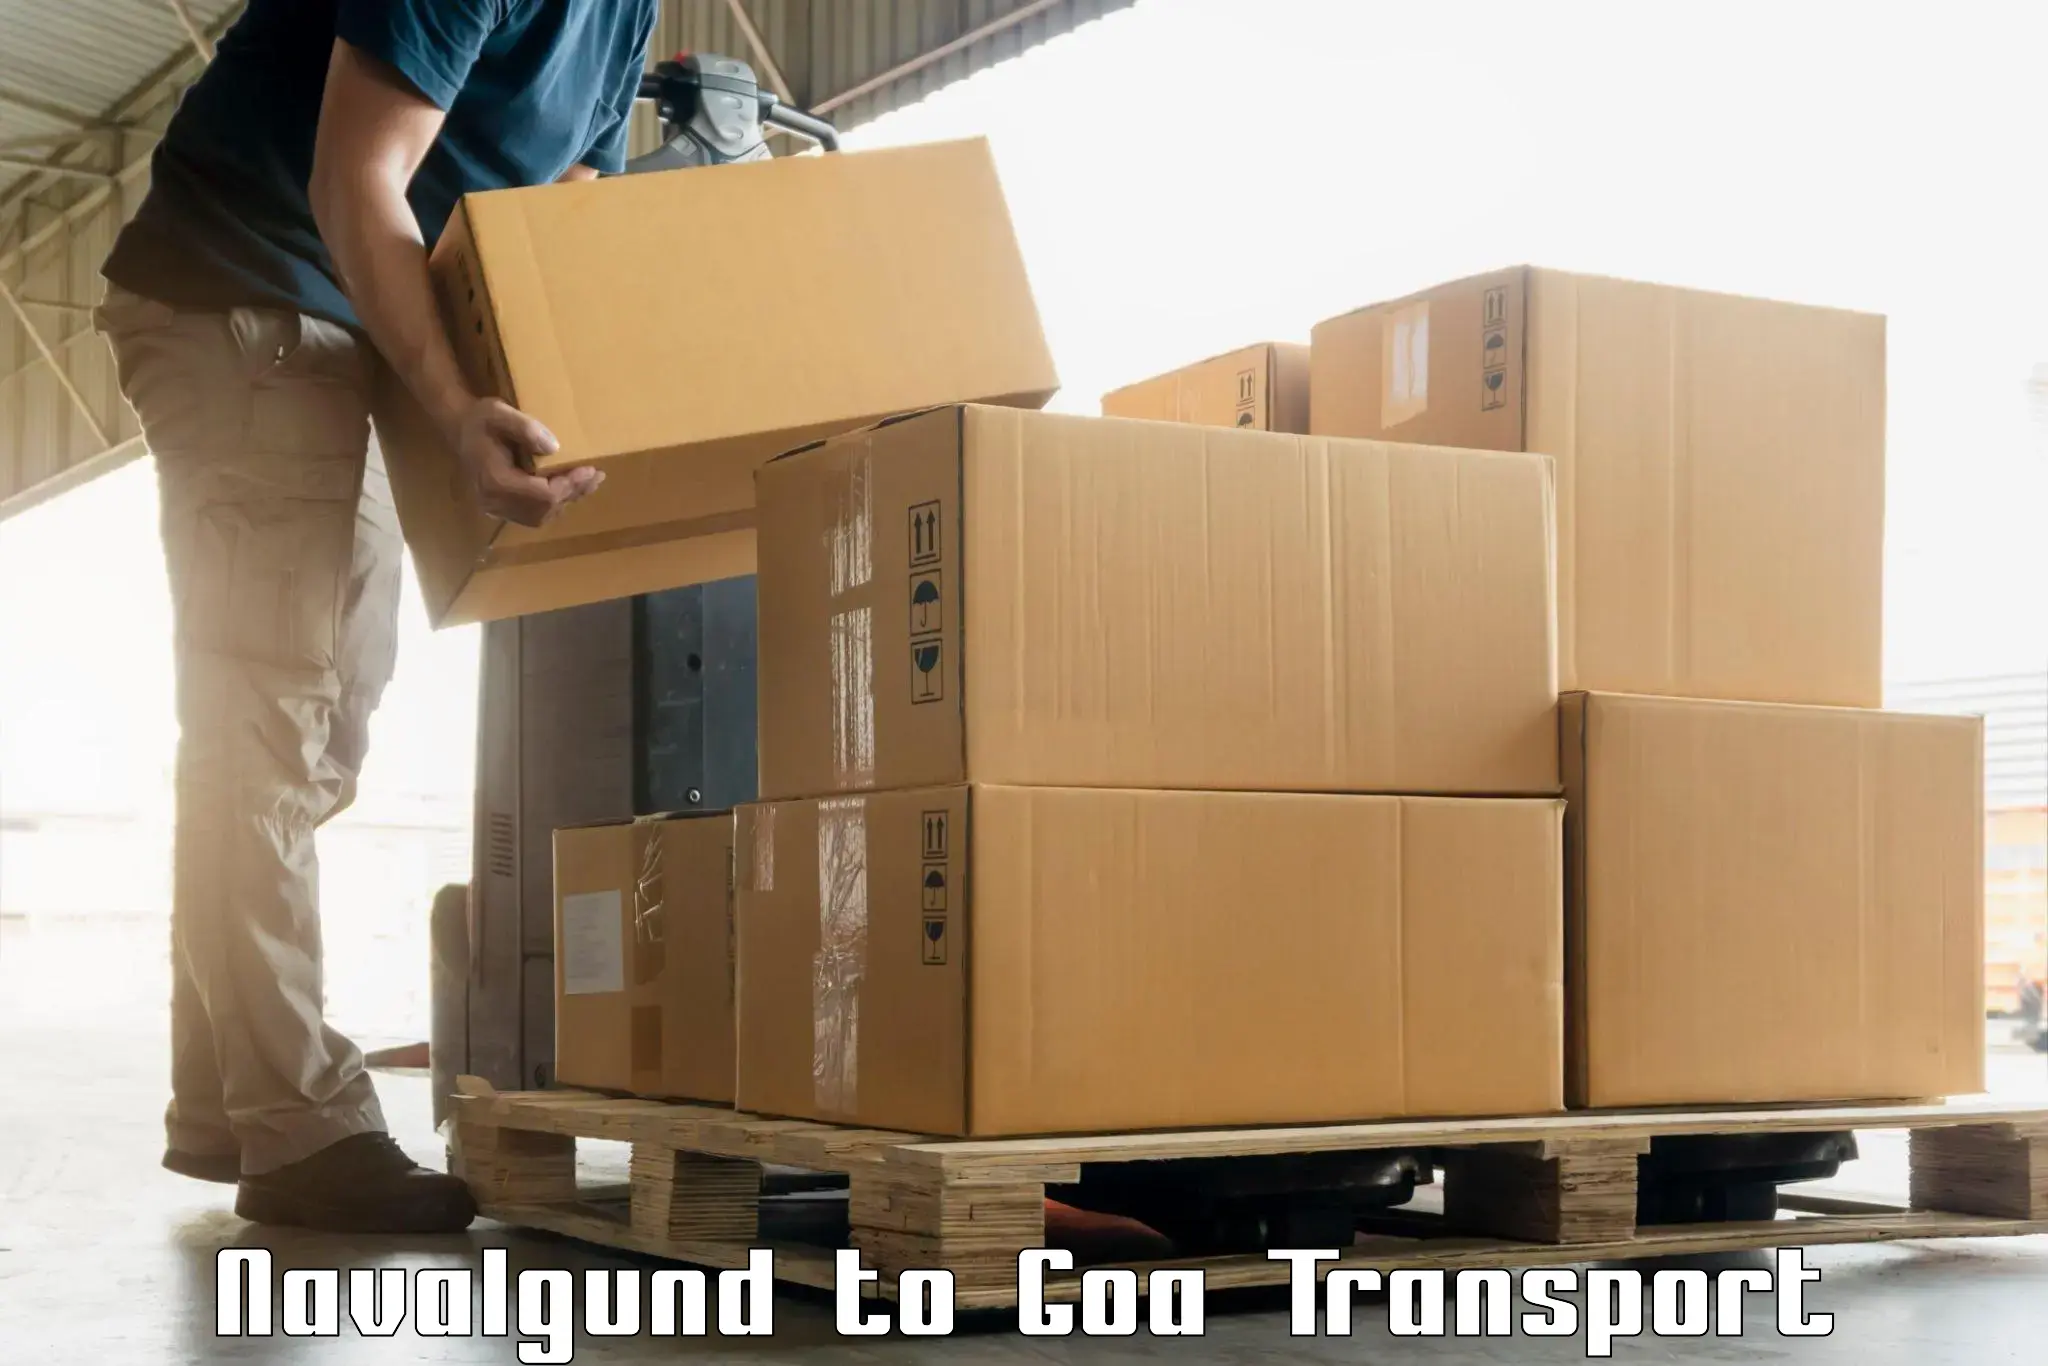 Cargo train transport services Navalgund to Goa